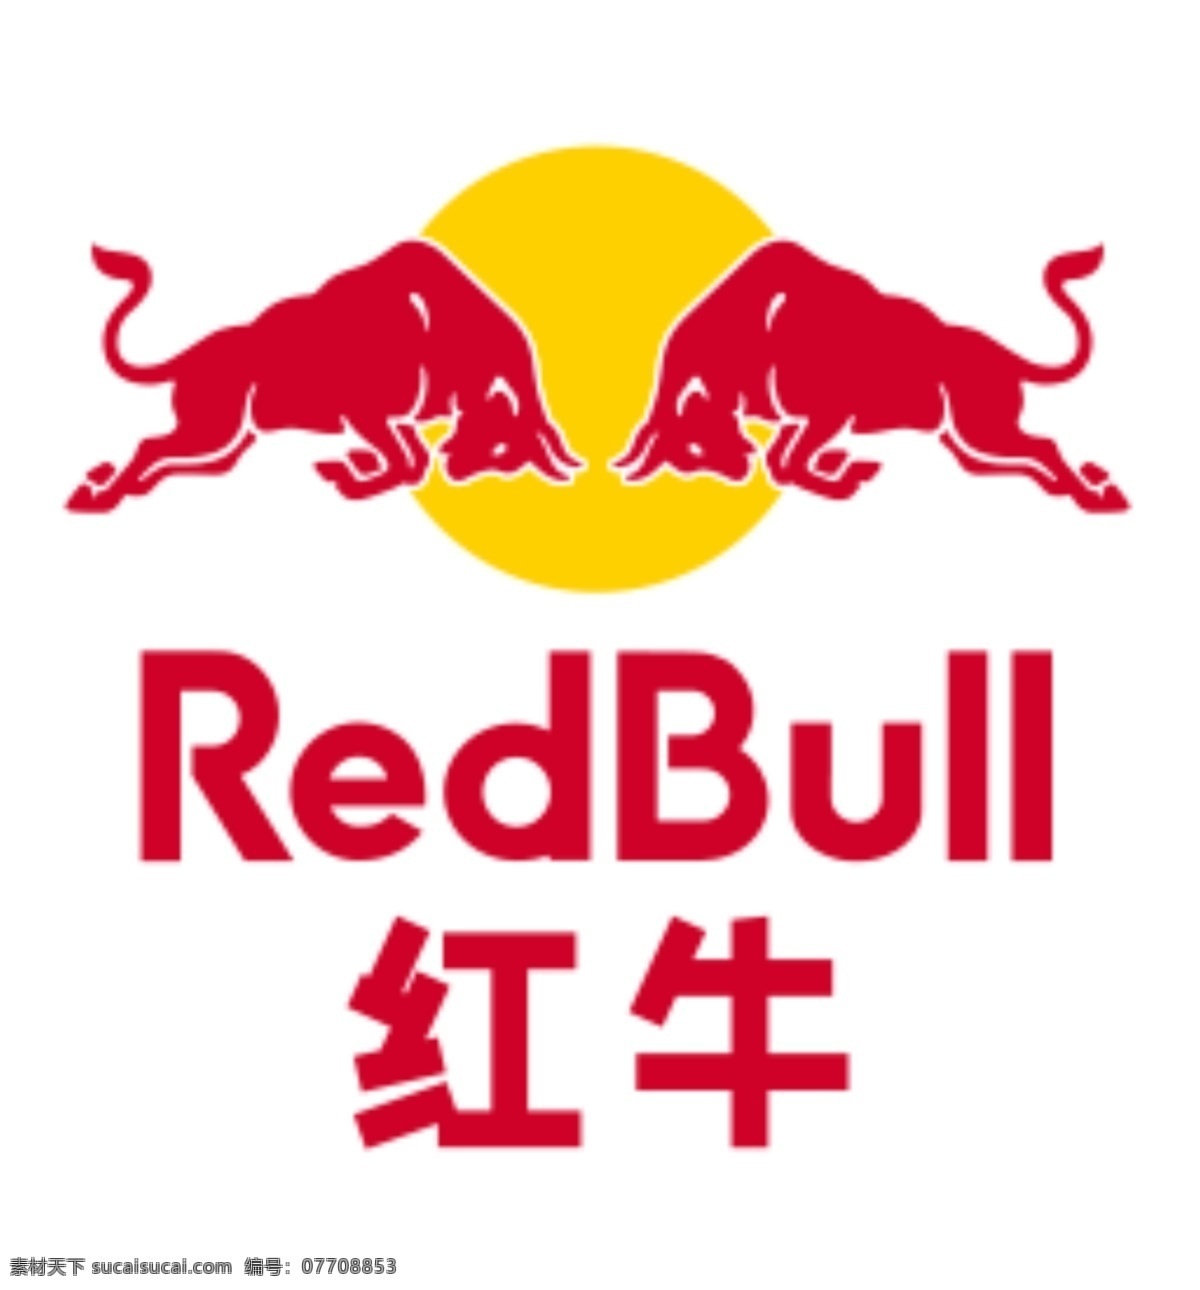 红牛logo 红牛标志 红牛图案 企业logo